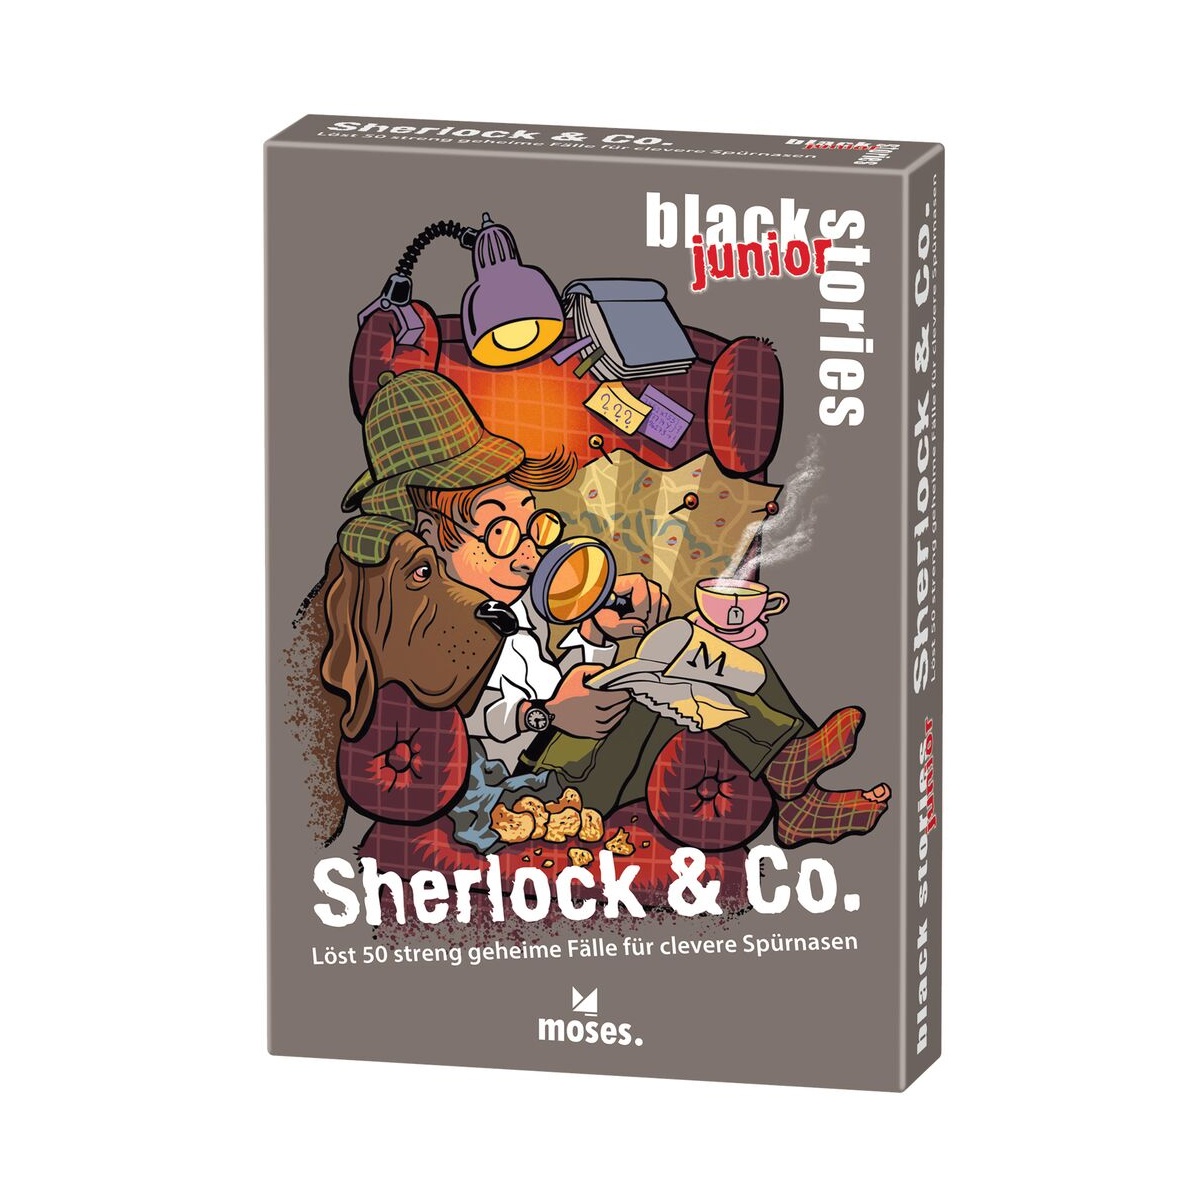 Black Stories junior Sherlock & Co. von Moses